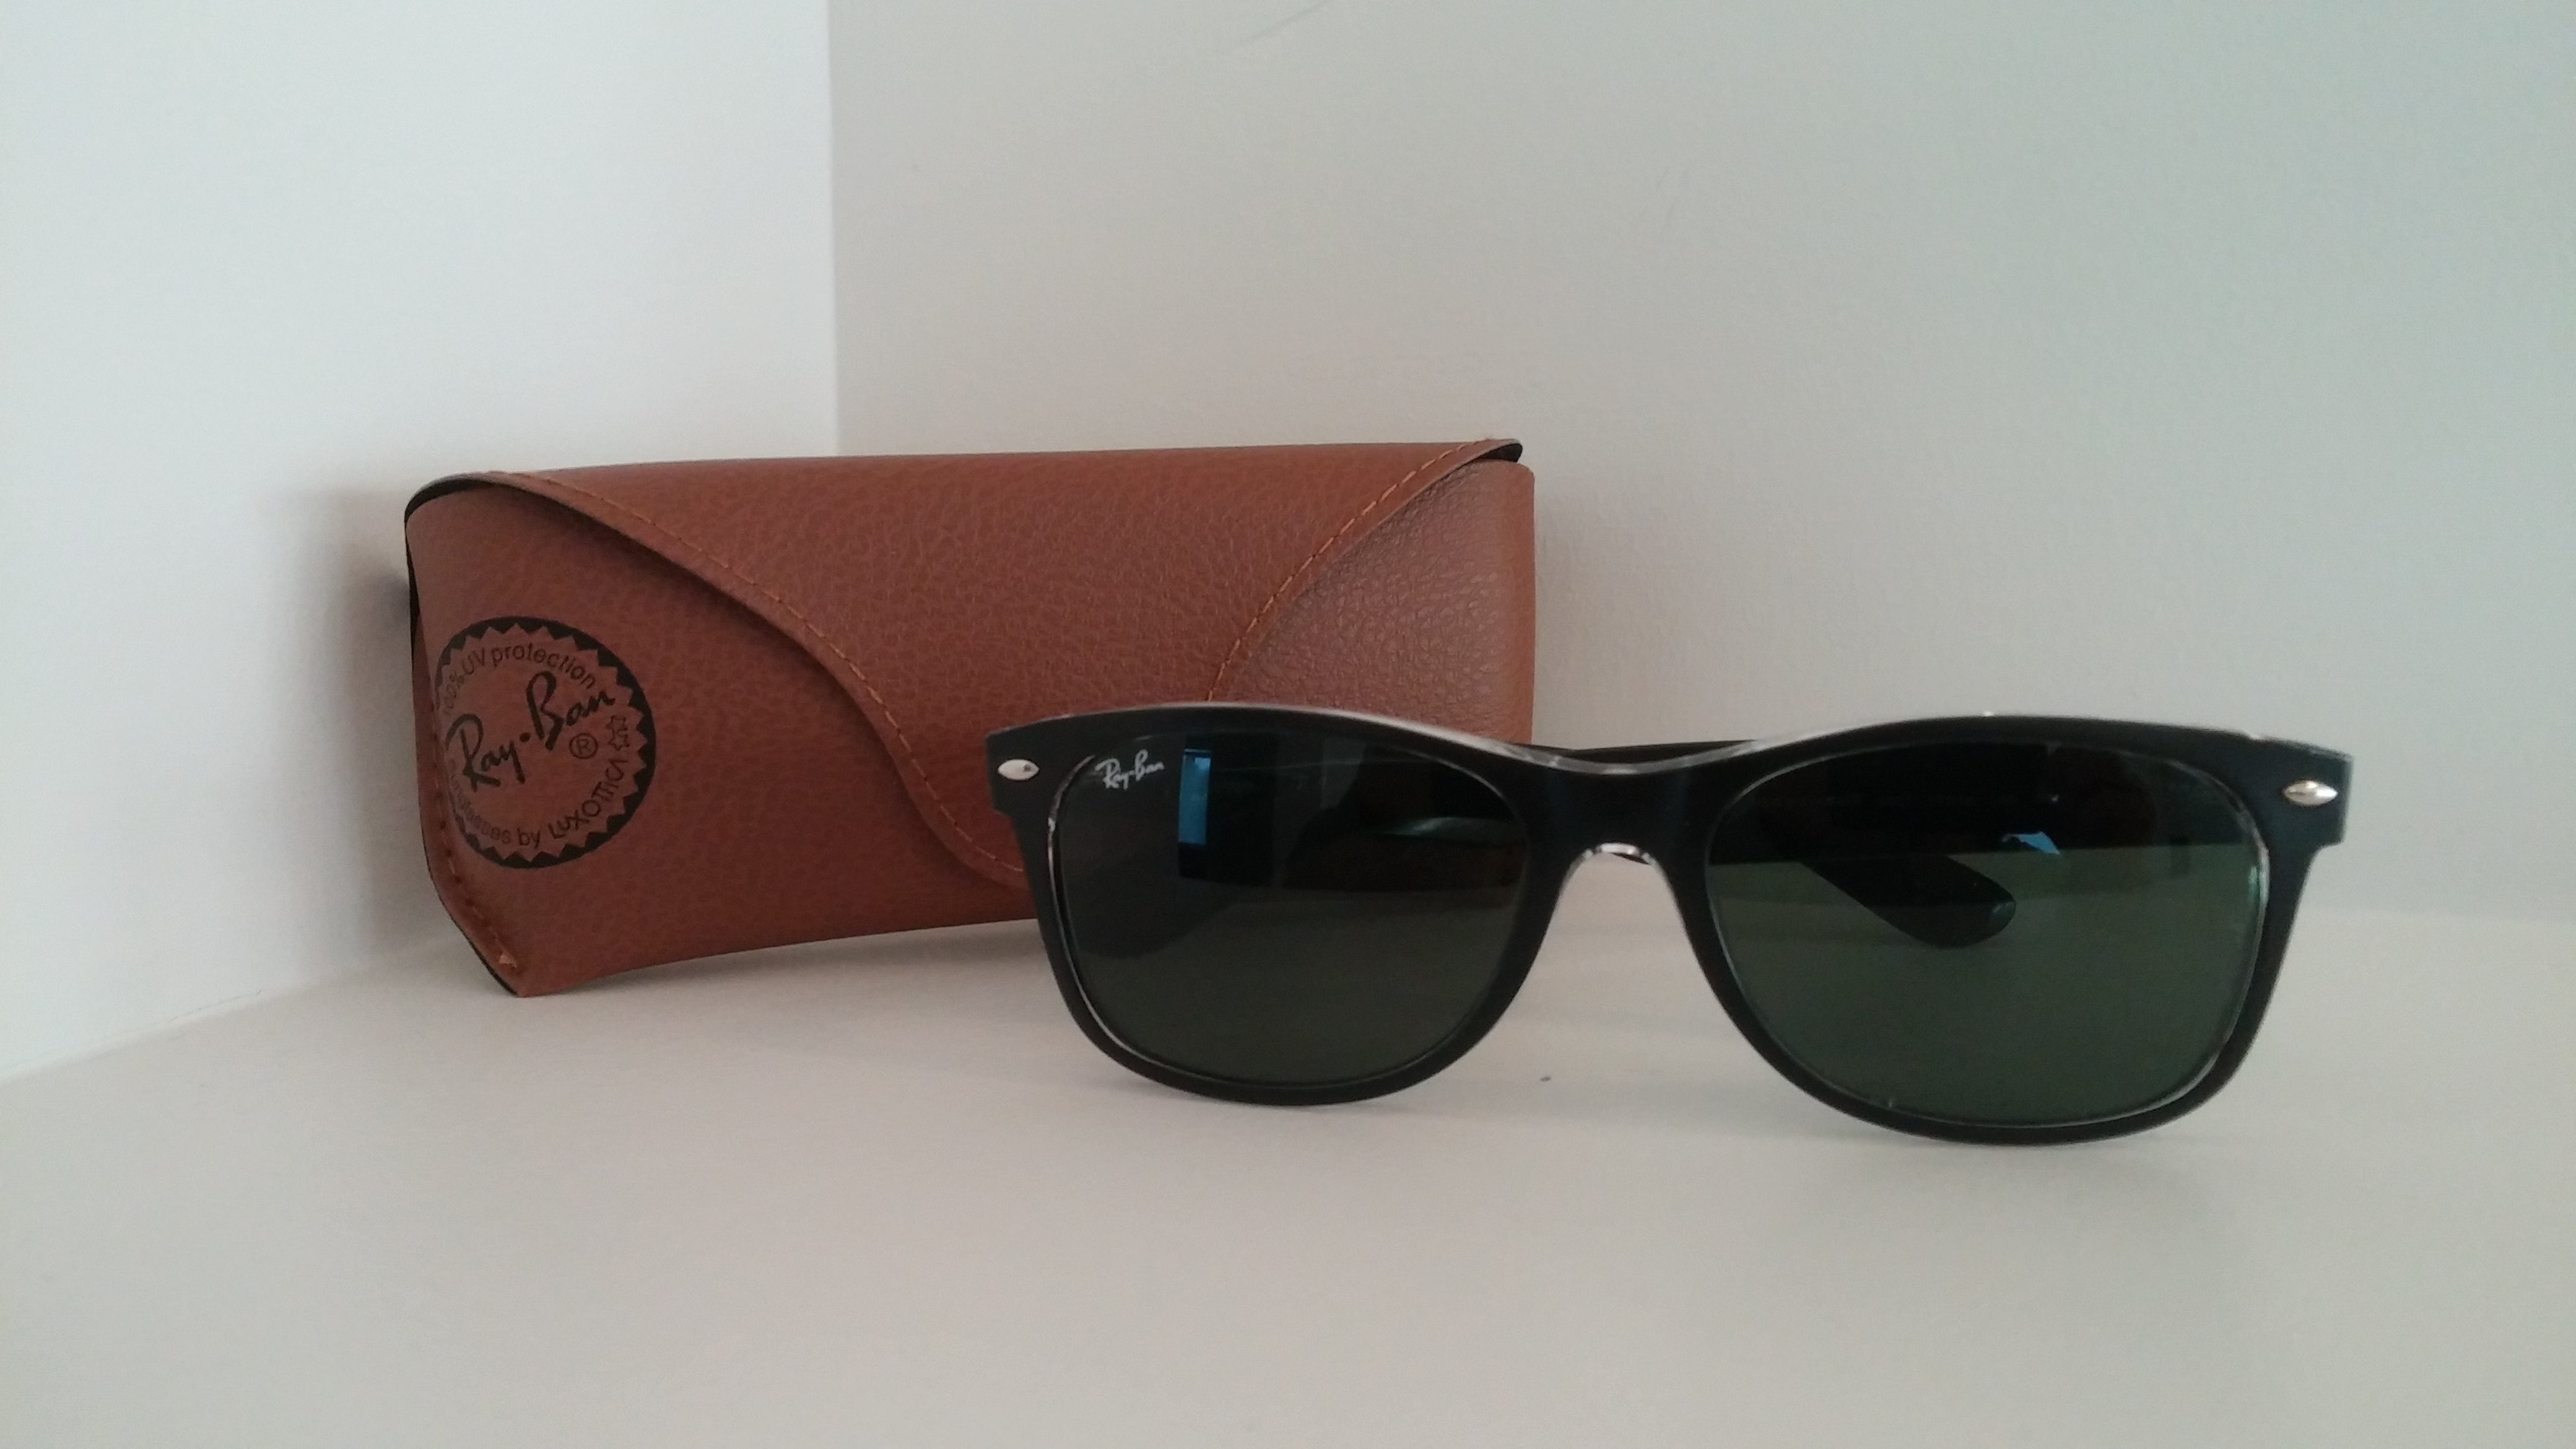 RayBan “New Wayfarer” Sunglasses